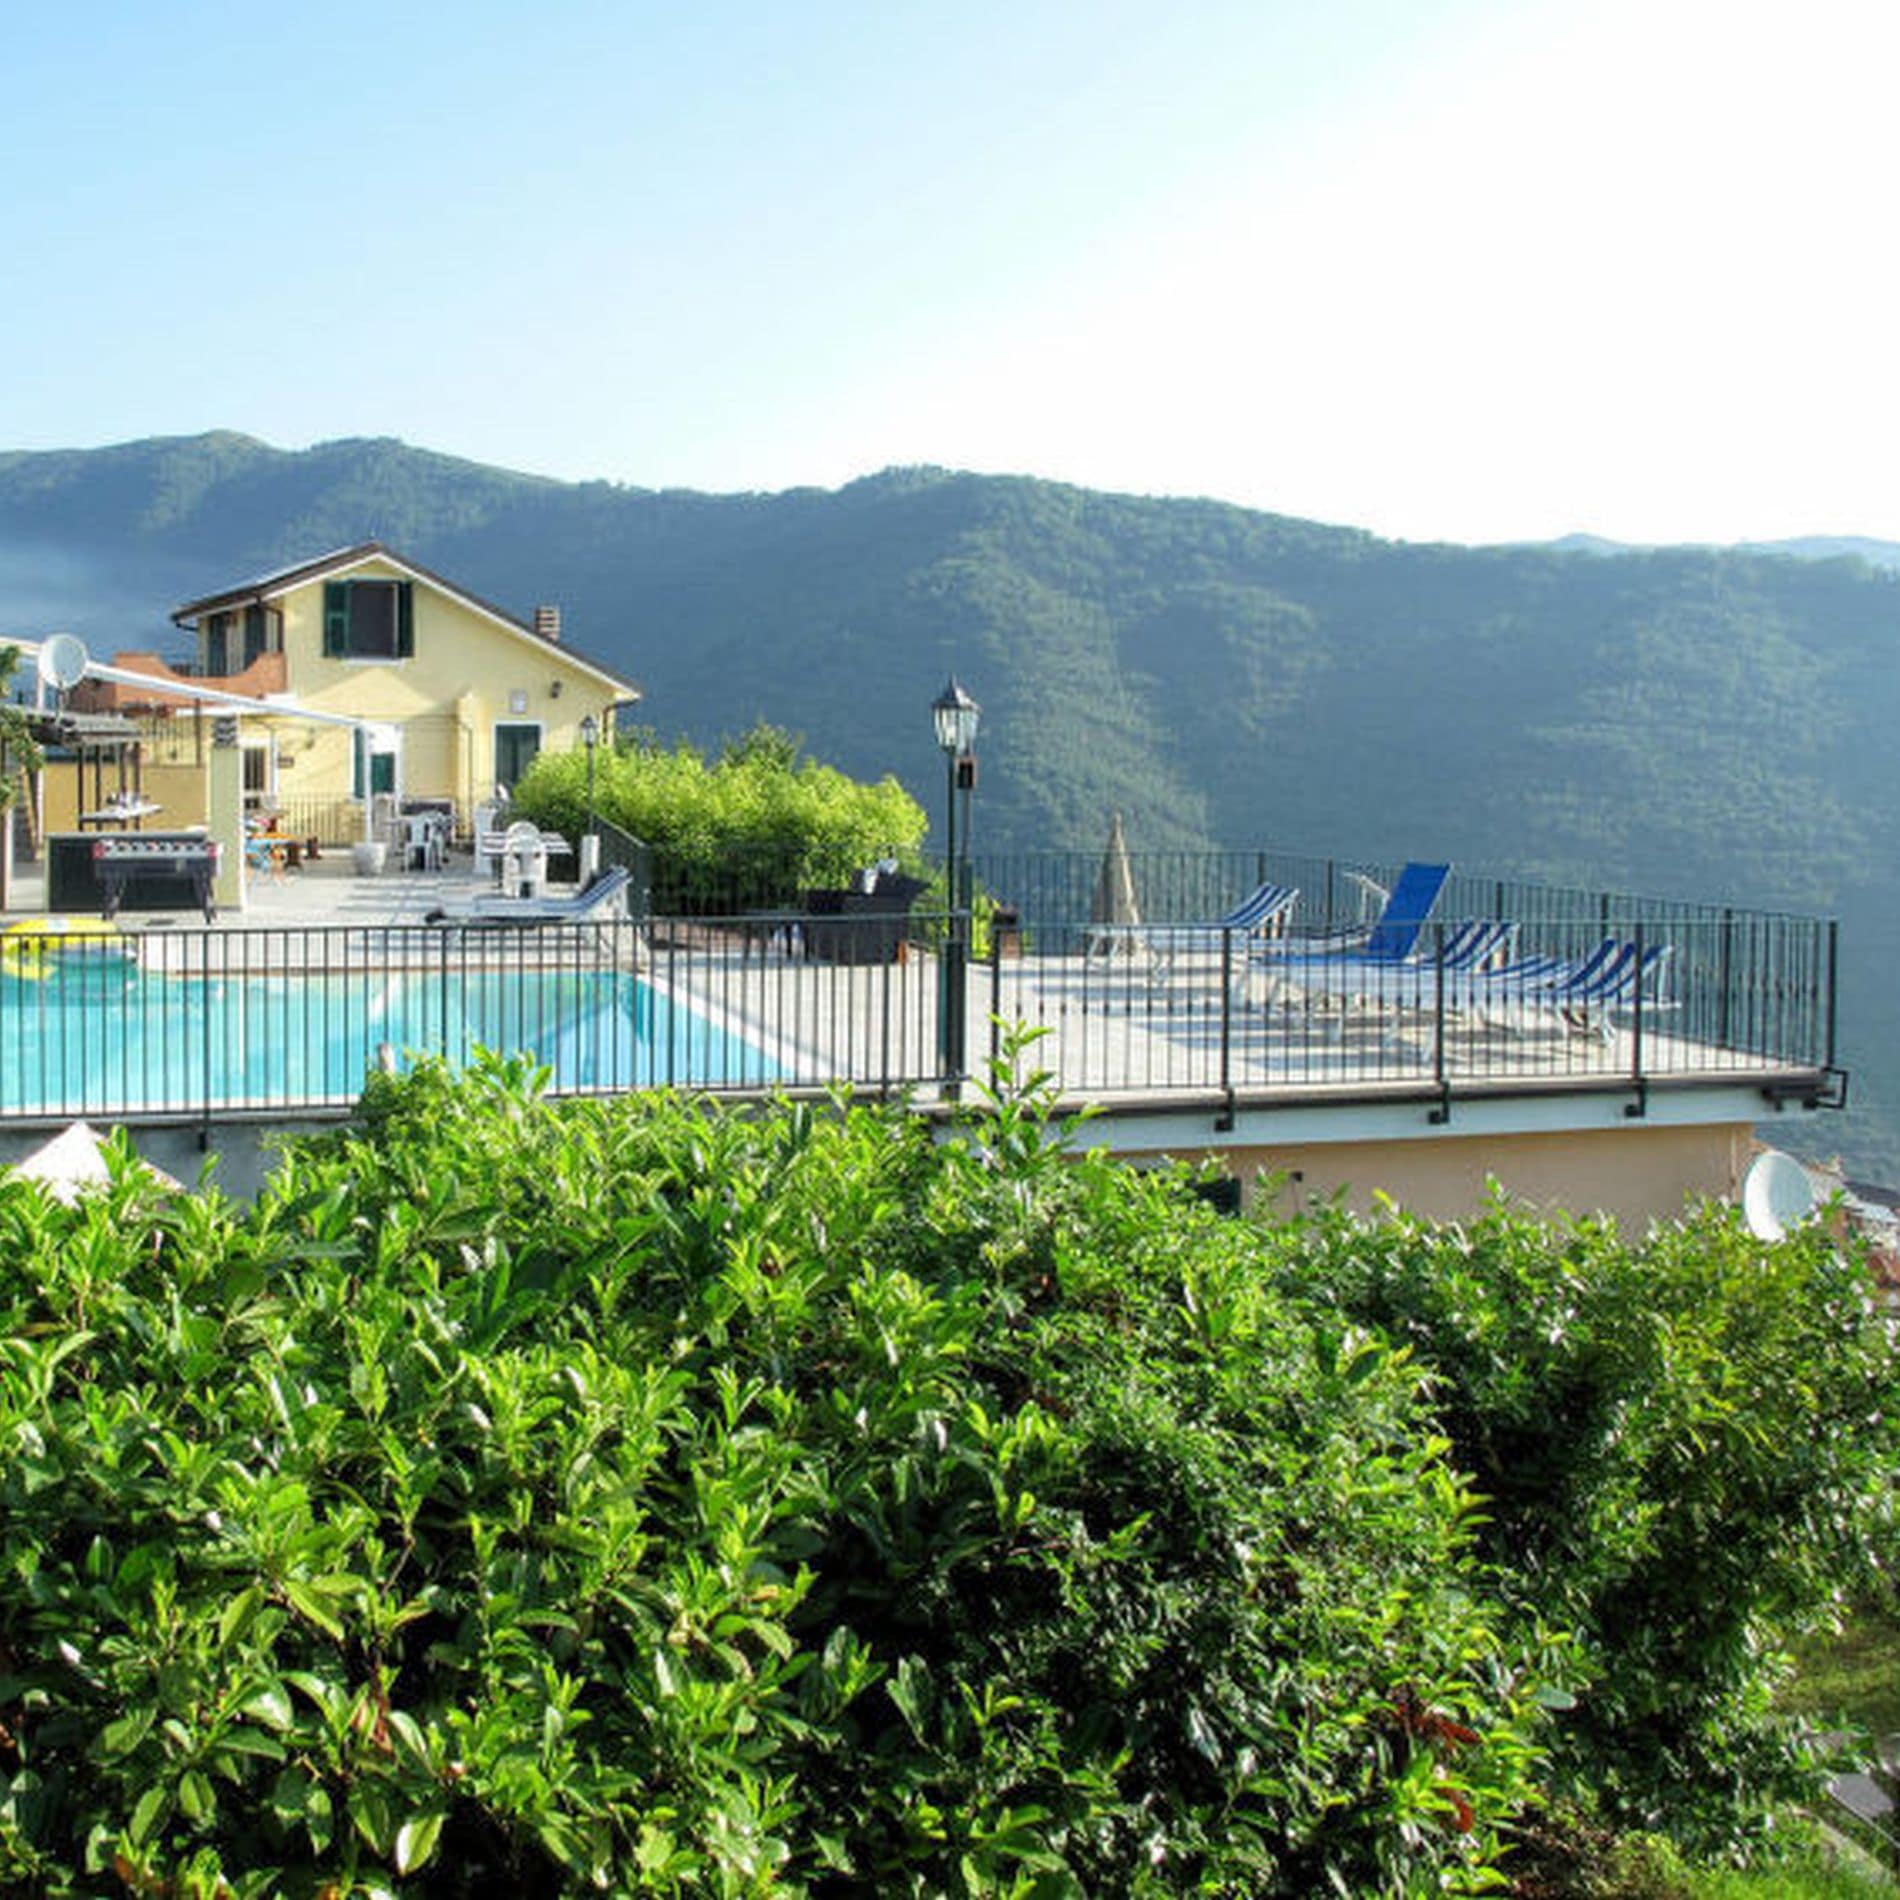 Hoch in den Bergen liegt die Ferienwohnung in Ligurien mit Pool, die einen Ausblick über die bewaldeten Hügel bis zum Meer bietet 